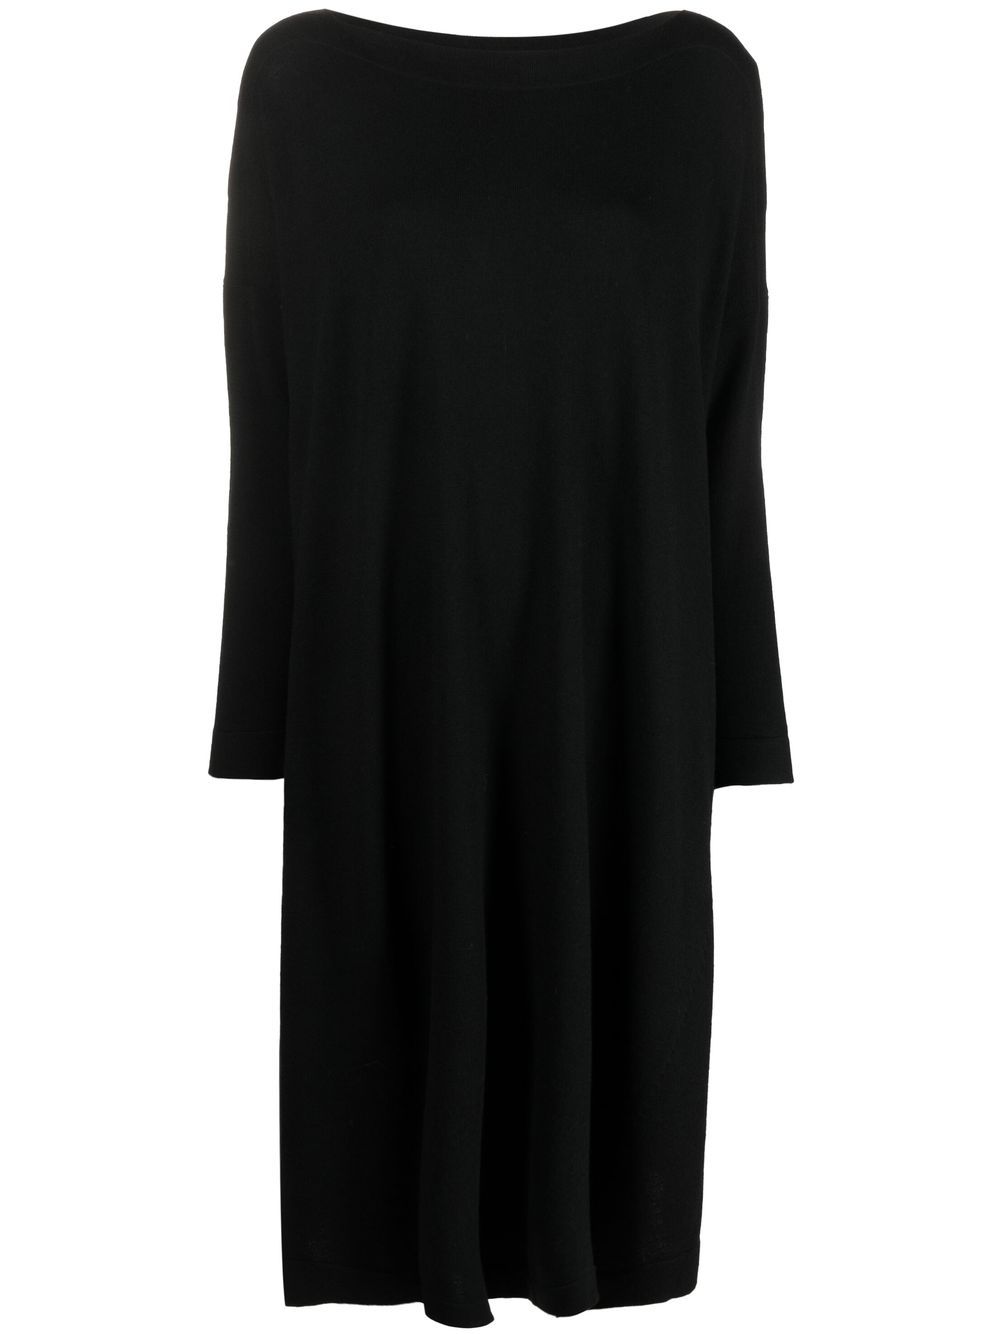 DANIELA GREGIS Black Oversized Wool Short Dress for Women - FW23